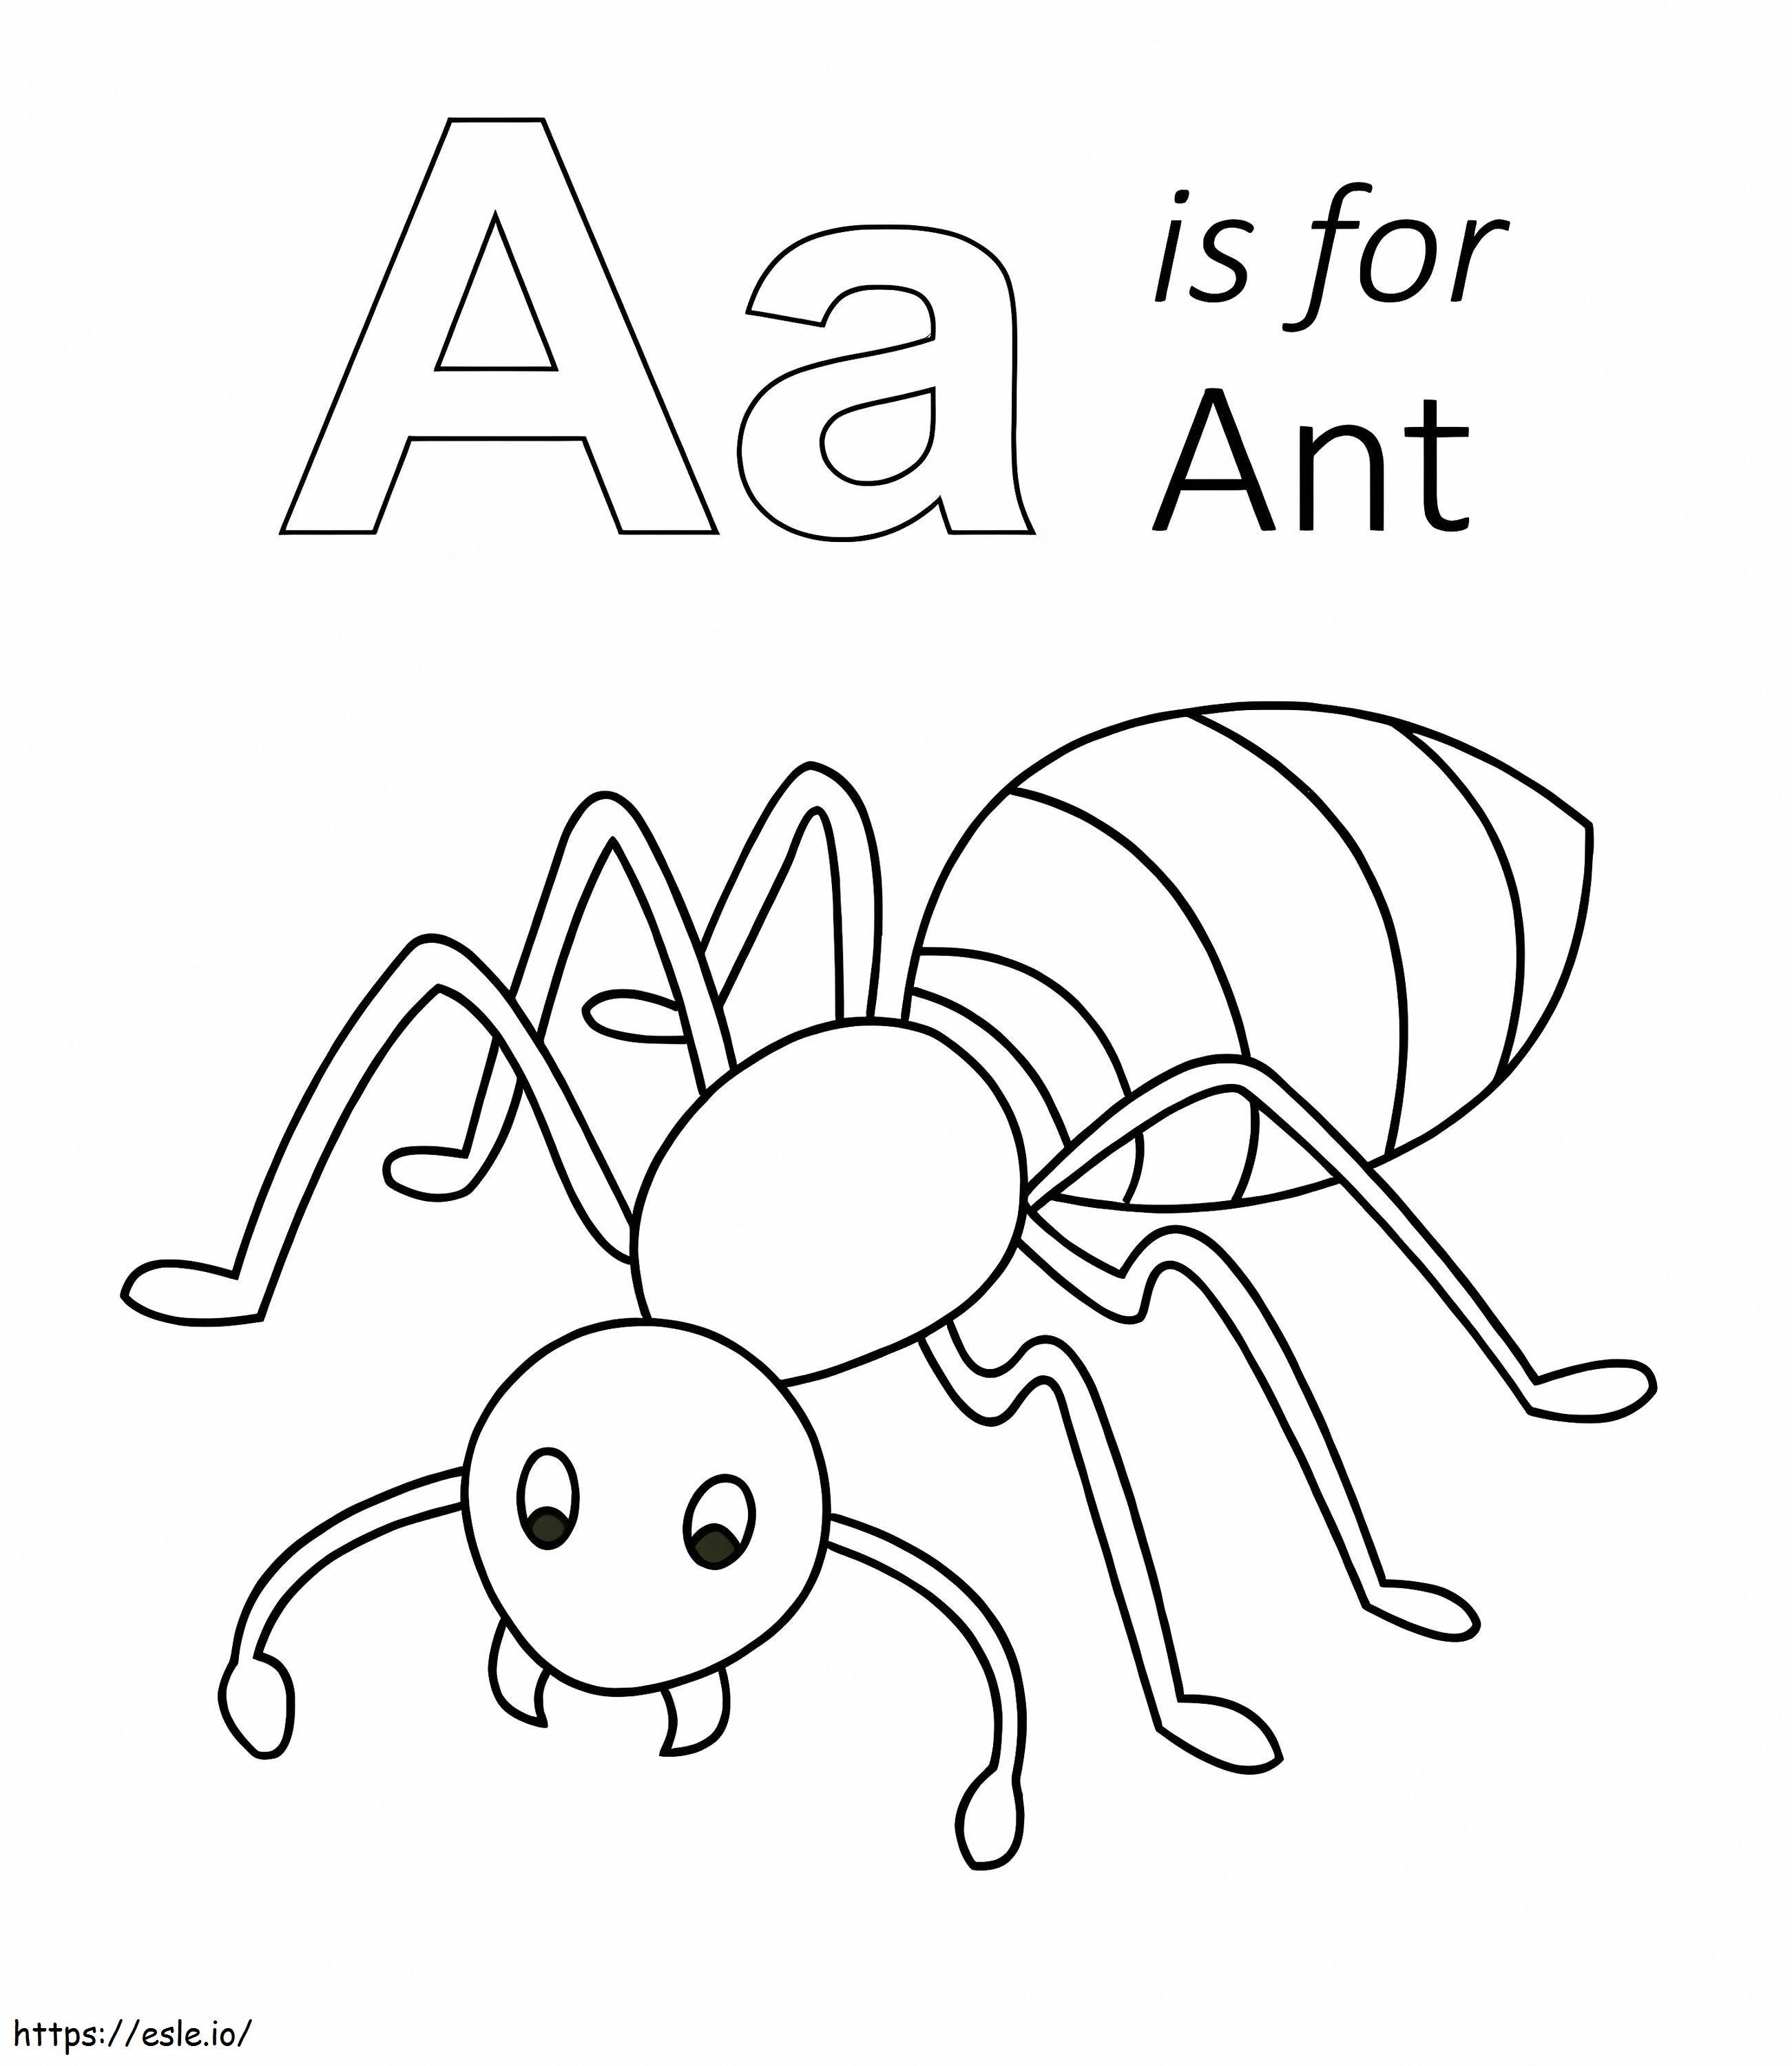 La lettera A è per la formica da colorare